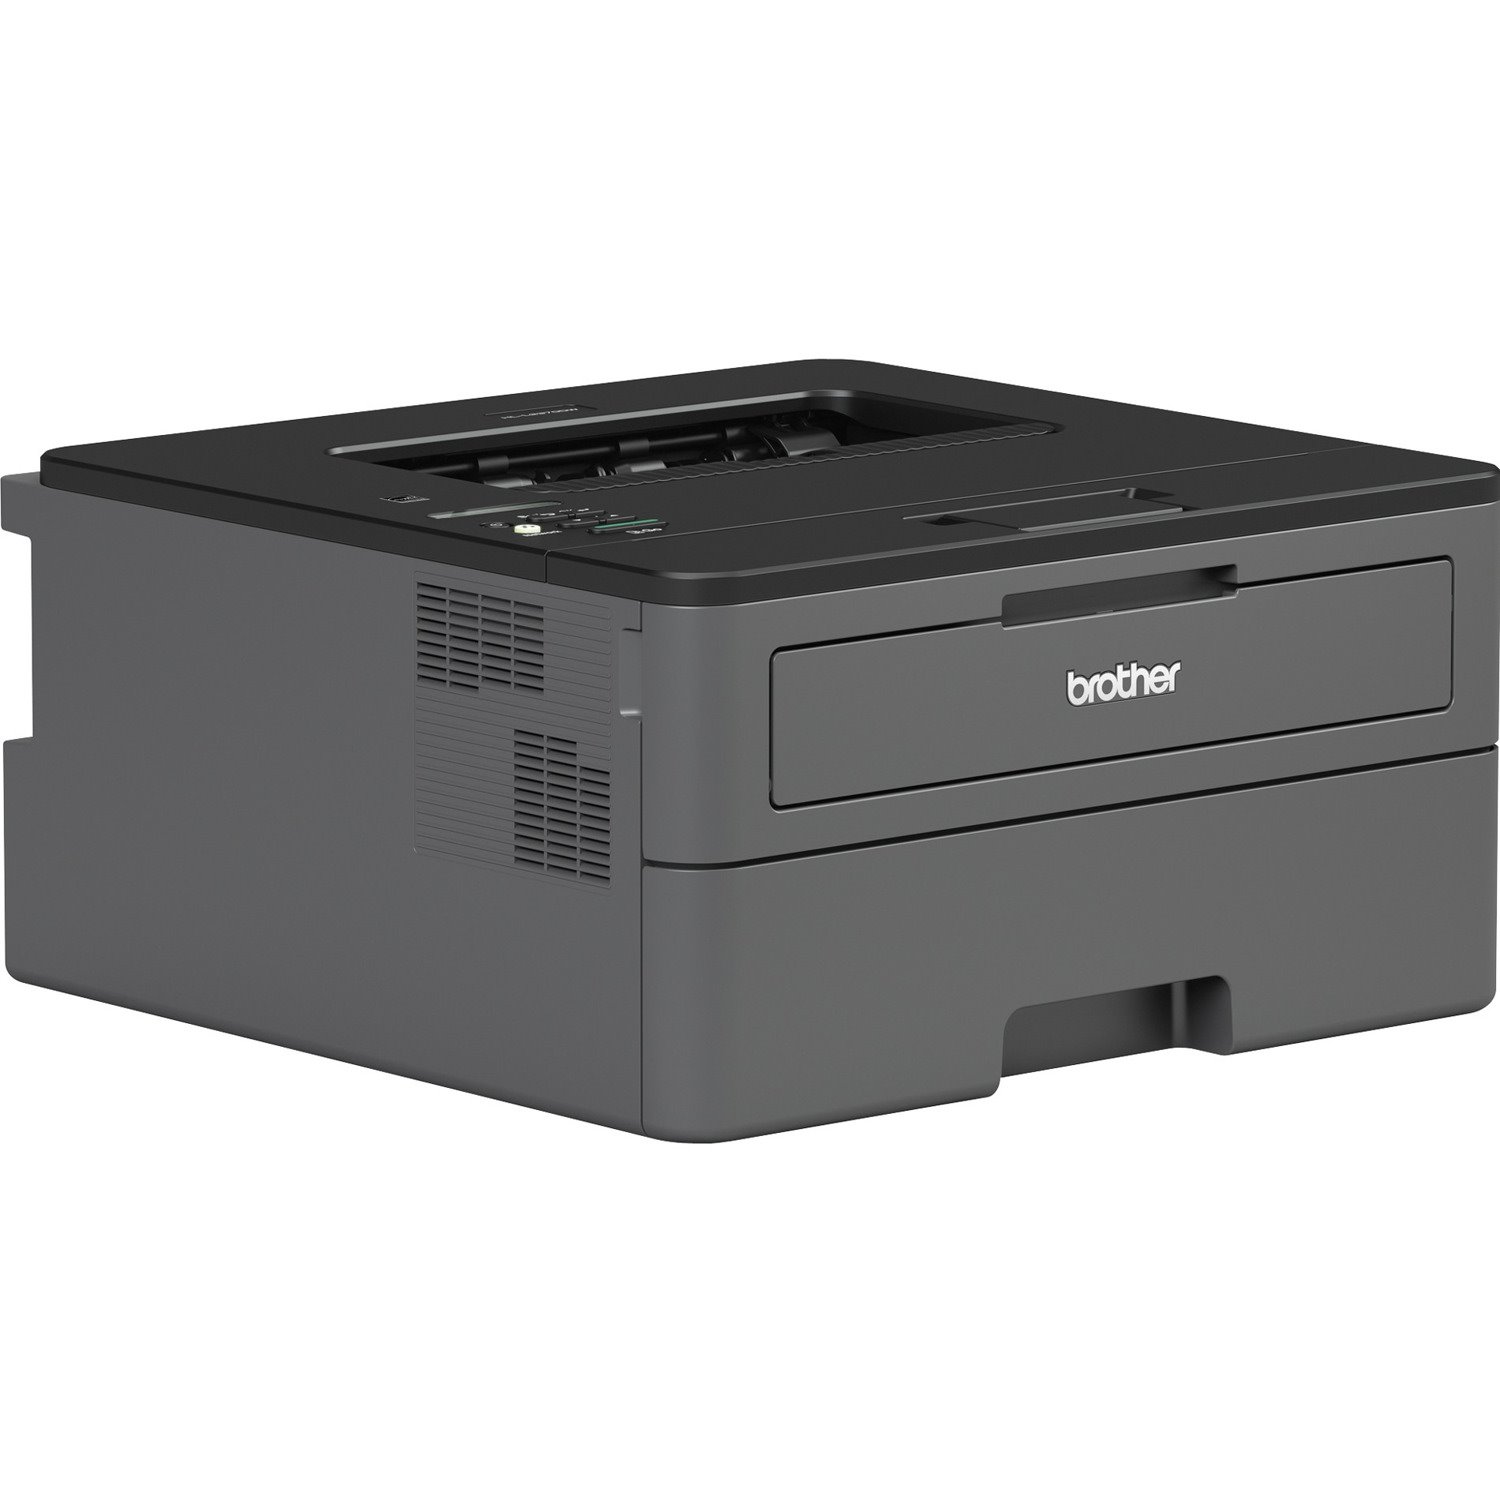 Brother HL HL-L2370DWXL Desktop Laser Printer - Monochrome